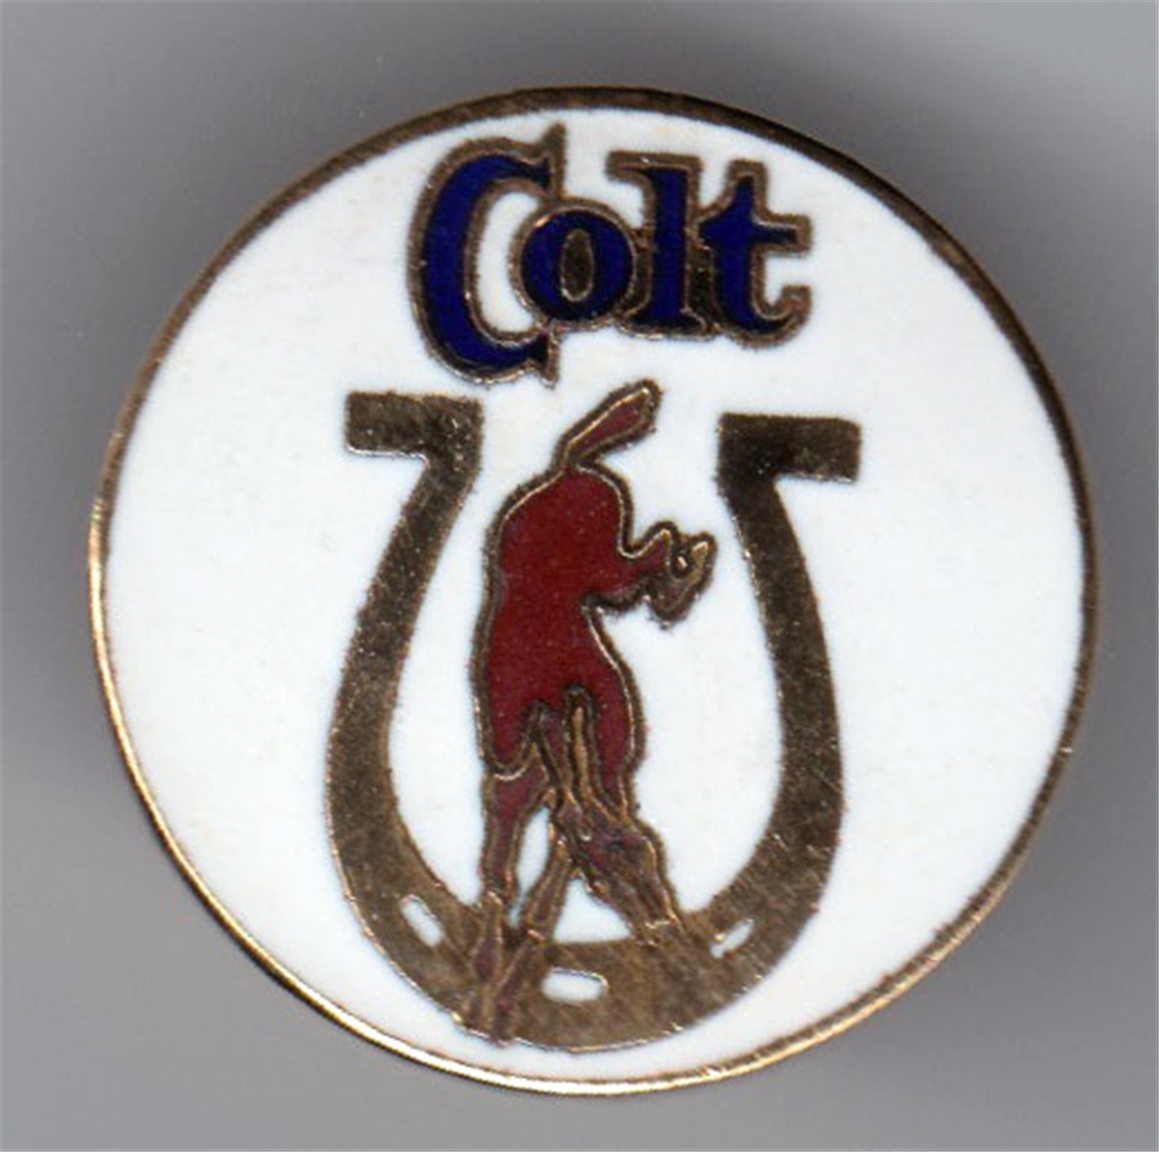 Colt 45 Malt Liquor Pin